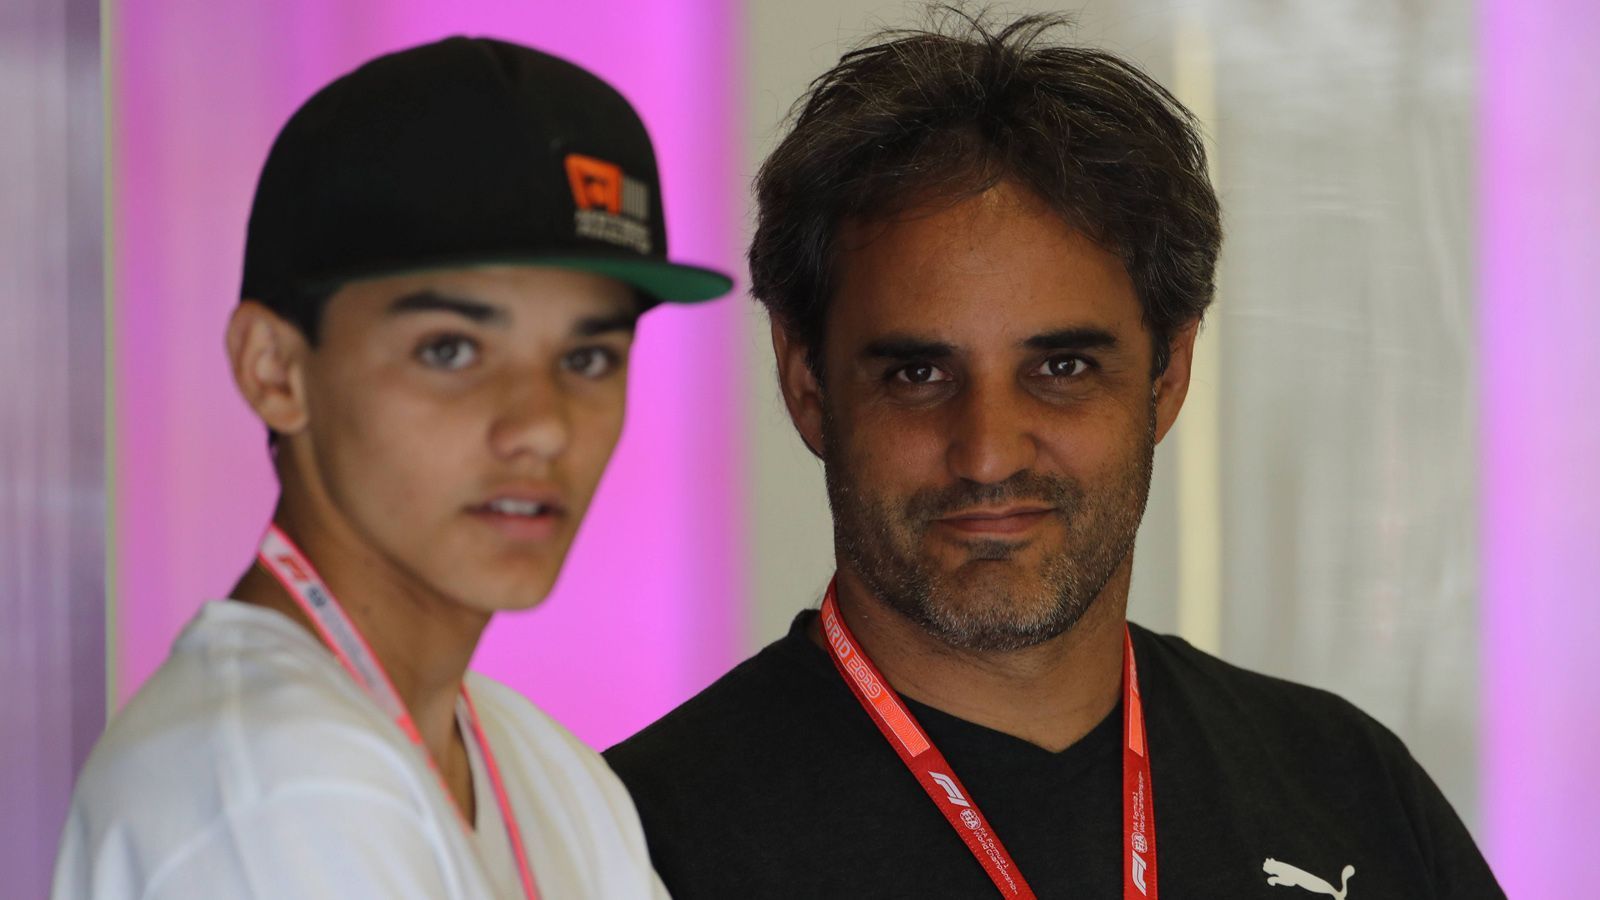 
                <strong>Sebastian Montoya</strong><br>
                Sein Vater Juan Pablo Montoya (Foto, rechts) fuhr von 2001 bis 2006 in der Formel 1, lieferte sich mit Michael Schumacher heiße Zweikämpfe und gewann sieben Rennen. Der erst 15-jährige Sohnemann Sebastian zeigte im Kart eine gute Veranlagung und startet nun 2020 in der ADAC Formel 4. Sein Vater sagt über ihn: "Er hat alles, was es für die Formel 1 braucht." 
              